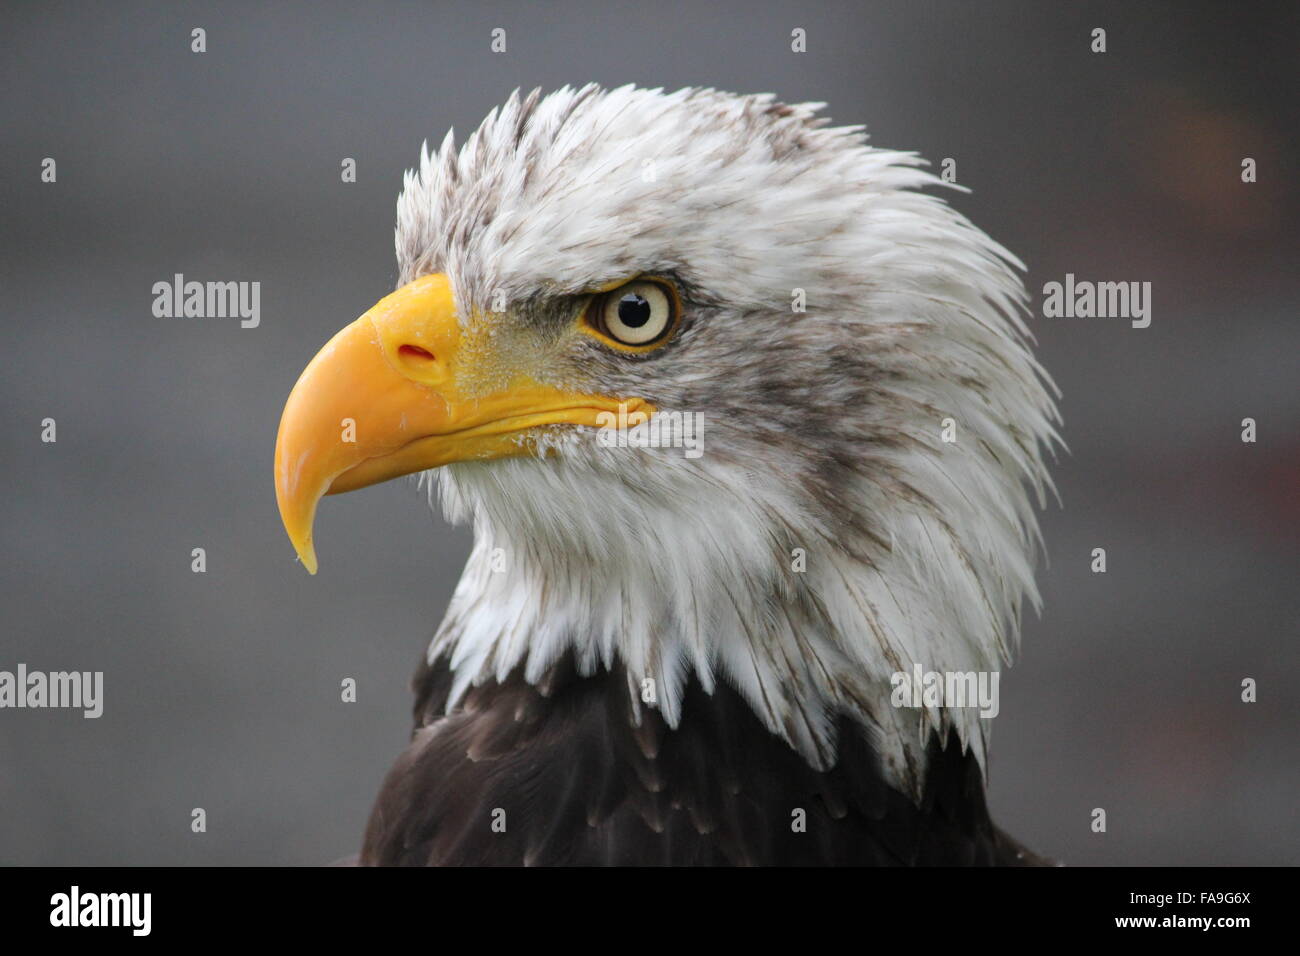 Retrato de un águila de cabeza blanca Foto de stock